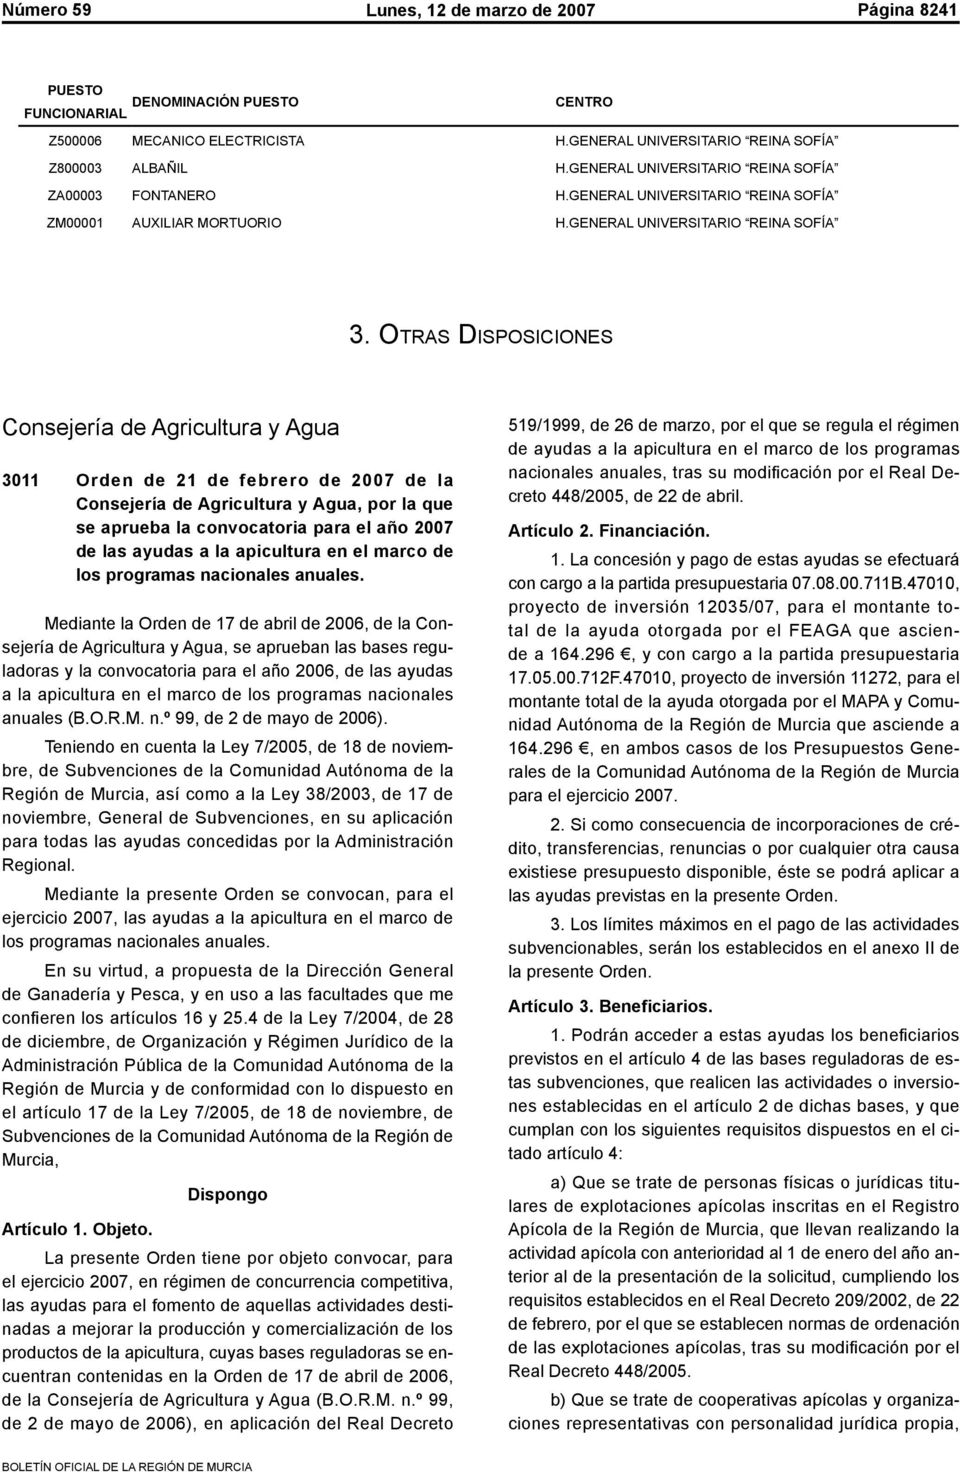 Otras Disposiciones Consejería de Agricultura y Agua 3011 Orden de 21 de febrero de 2007 de la Consejería de Agricultura y Agua, por la que se aprueba la convocatoria para el año 2007 de las ayudas a